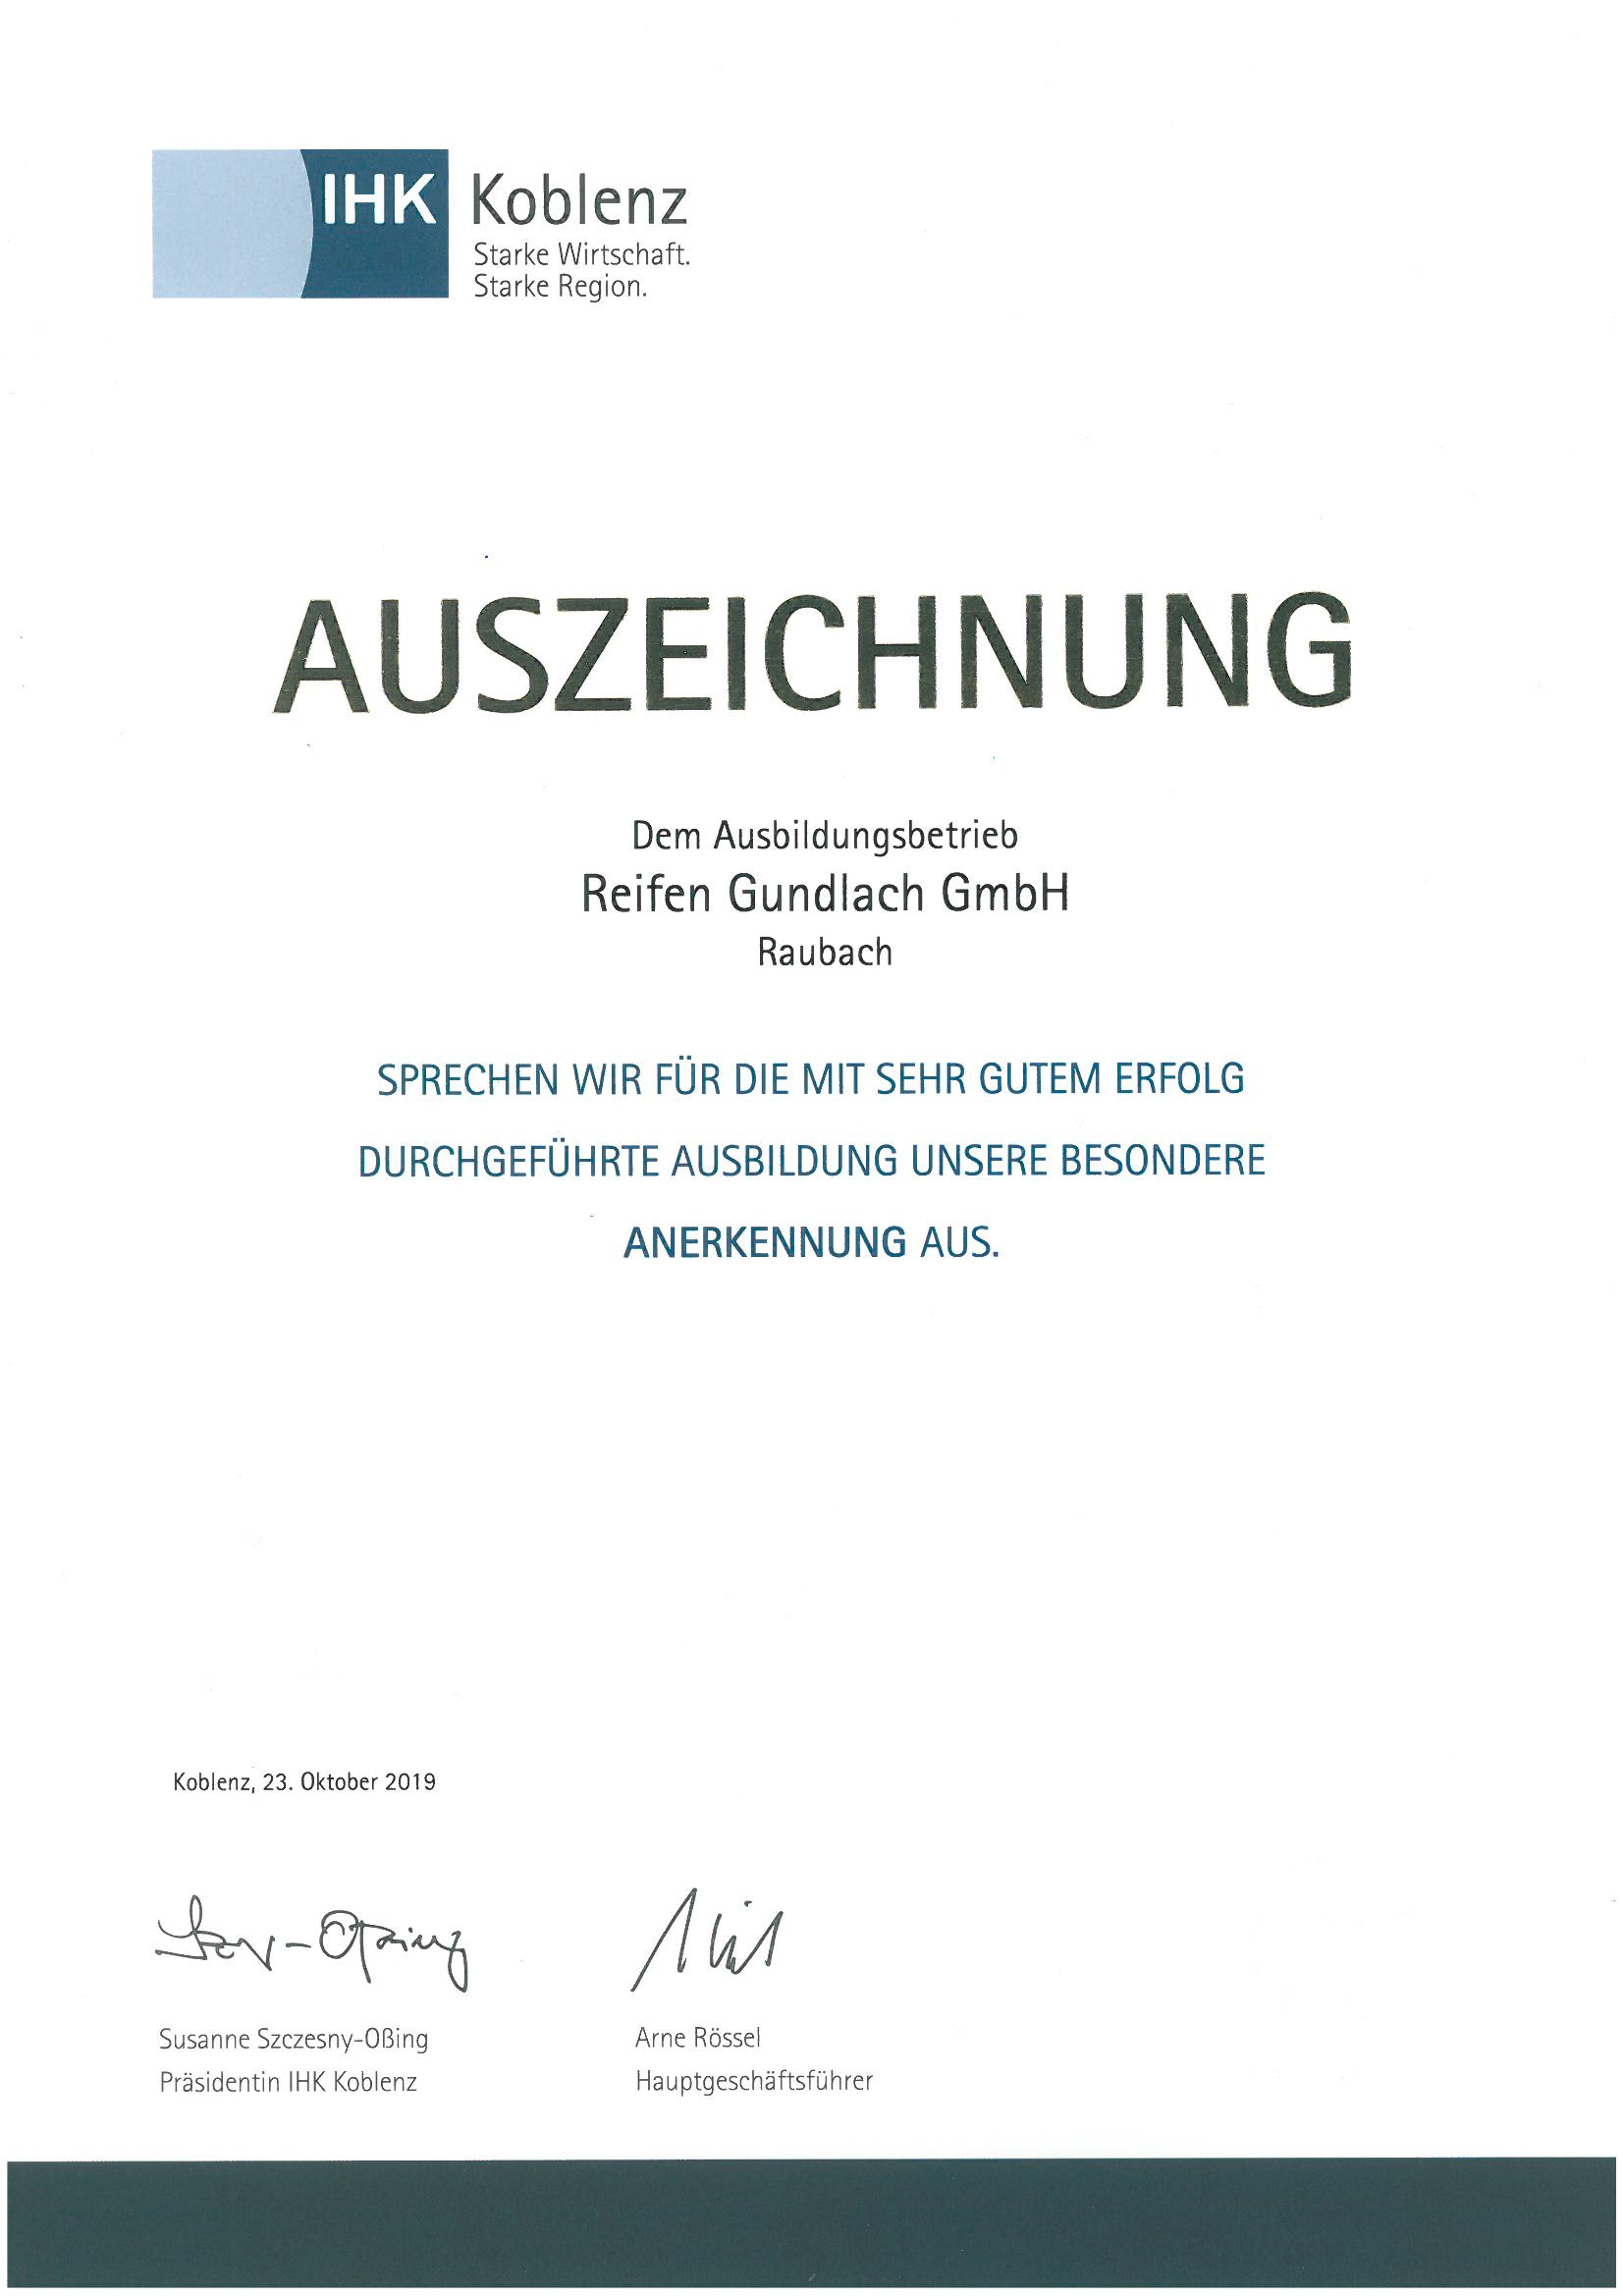 IHK Auszeichnung Ausbildungsbetrieb Gundlach GmbH